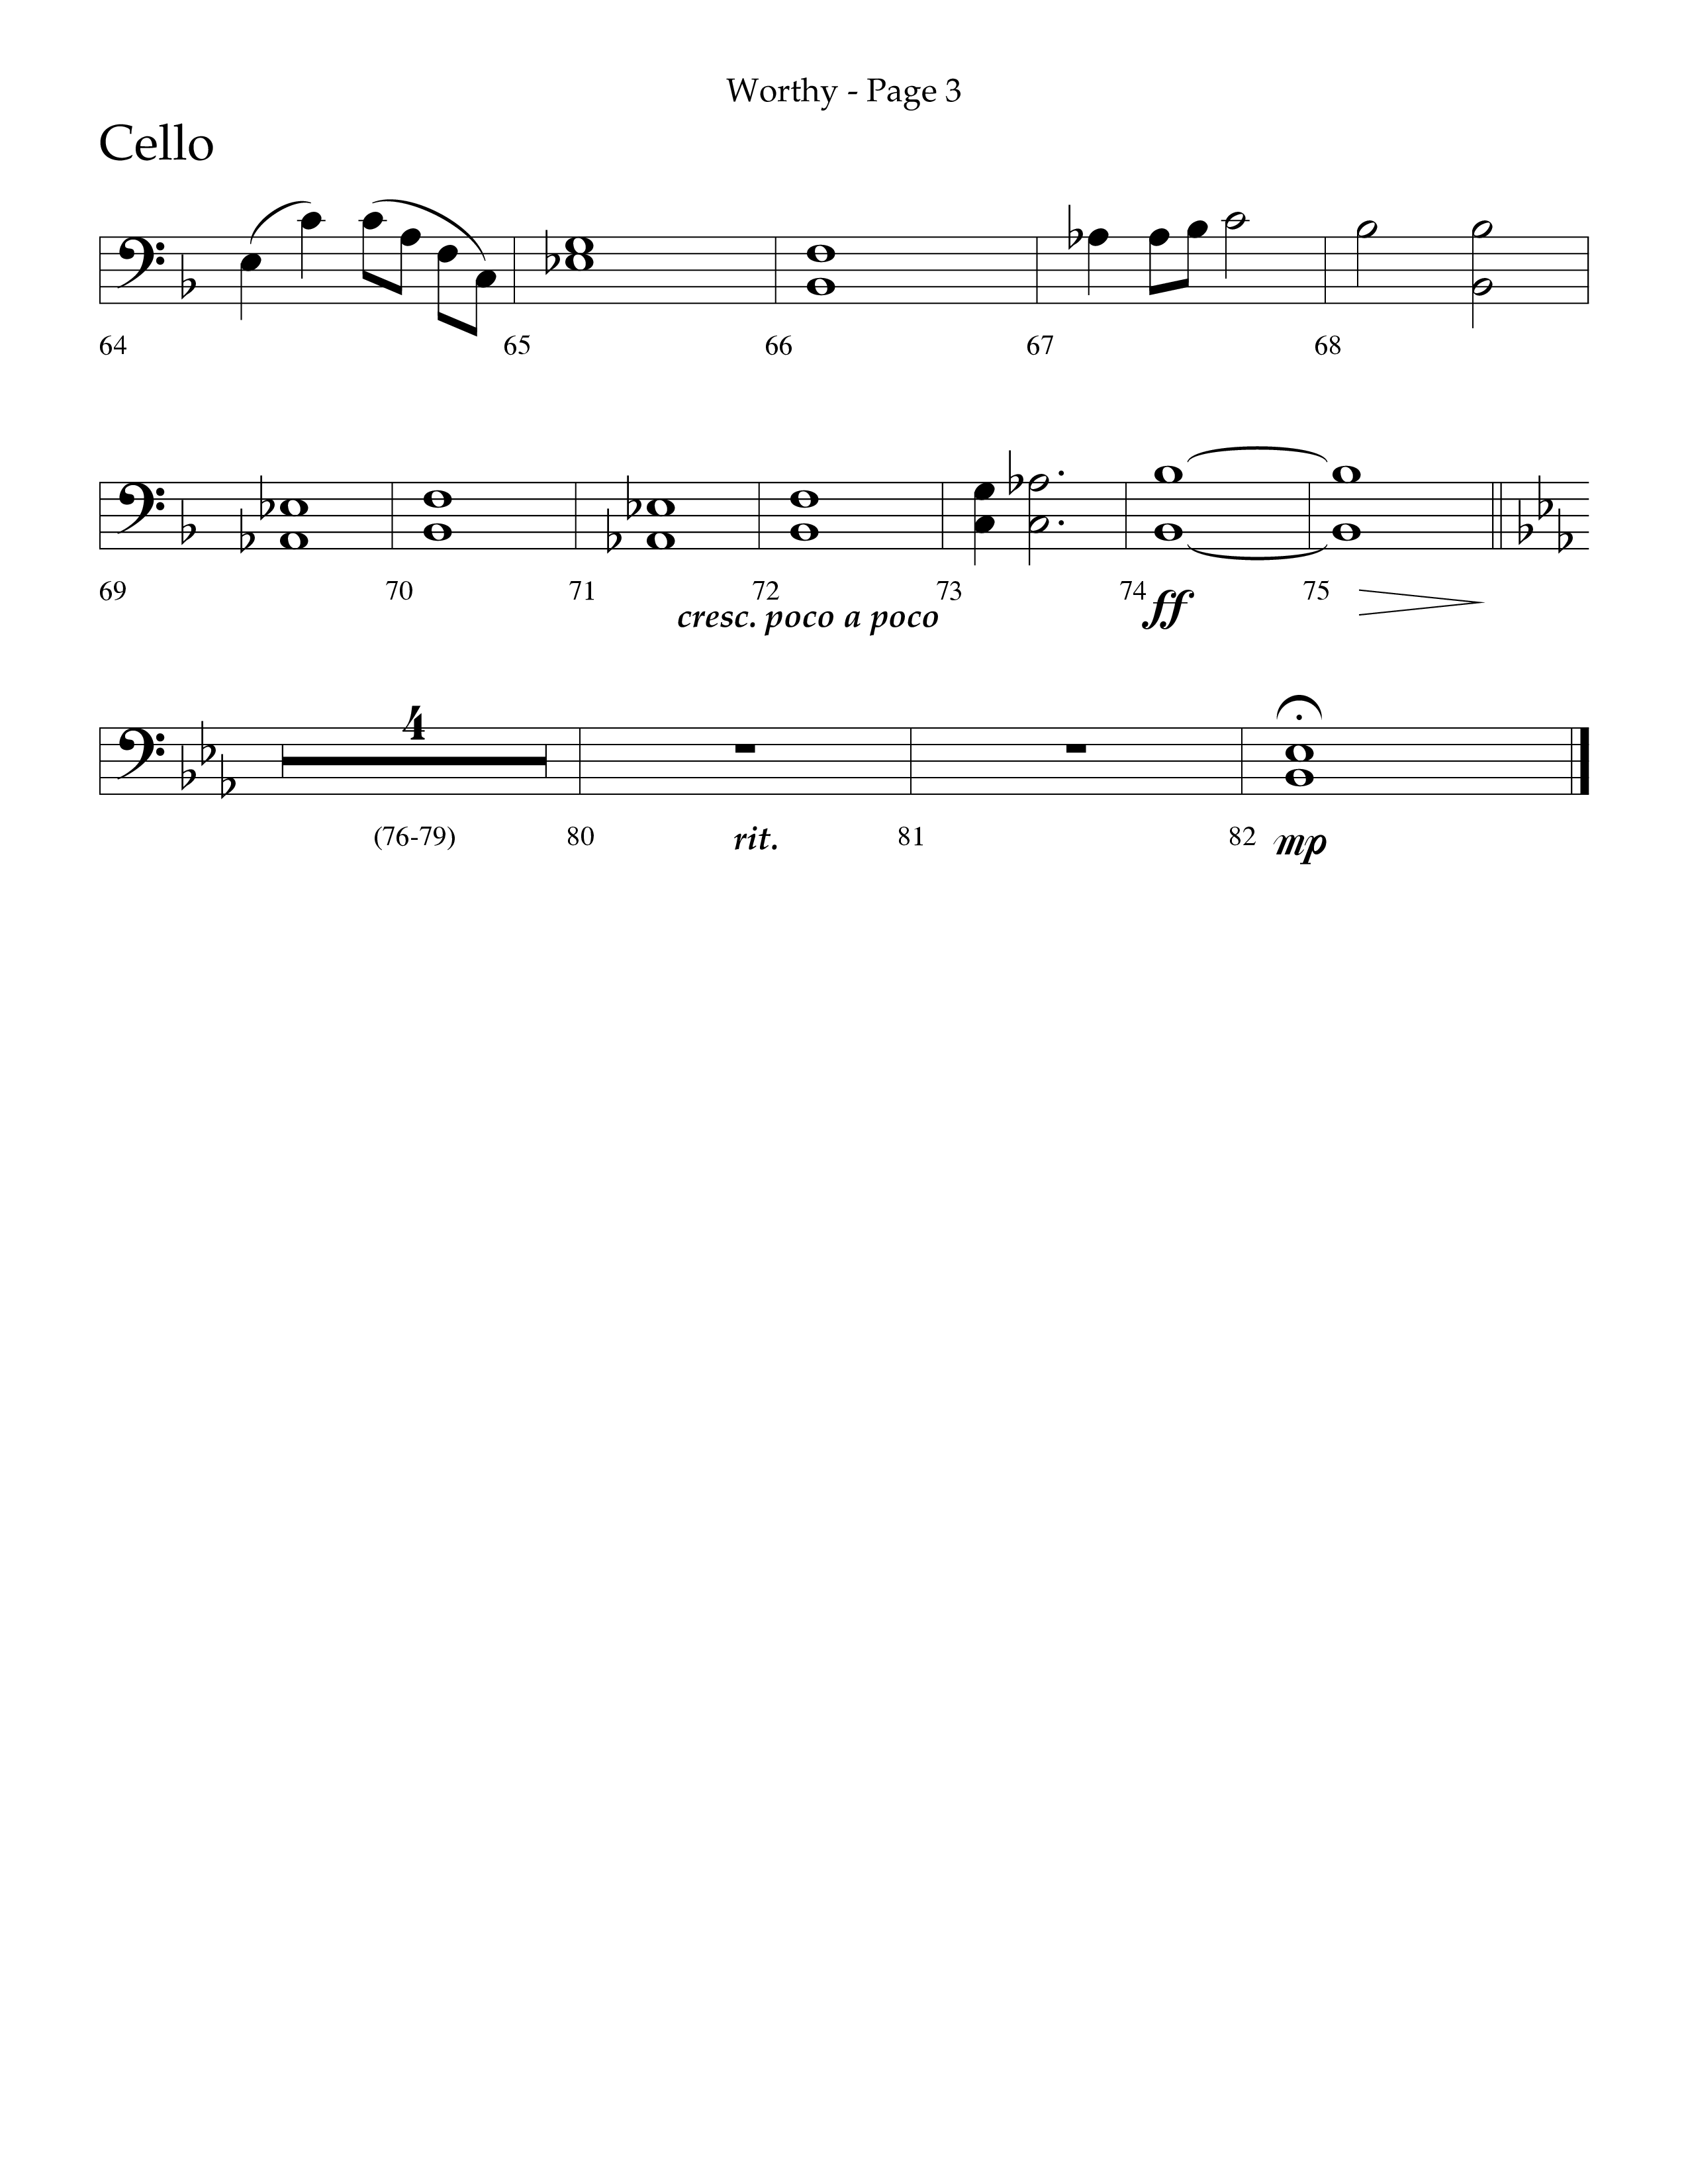 Worthy (Choral Anthem SATB) Cello (Lifeway Choral / Arr. Dennis Allen / Orch. David Davidson)